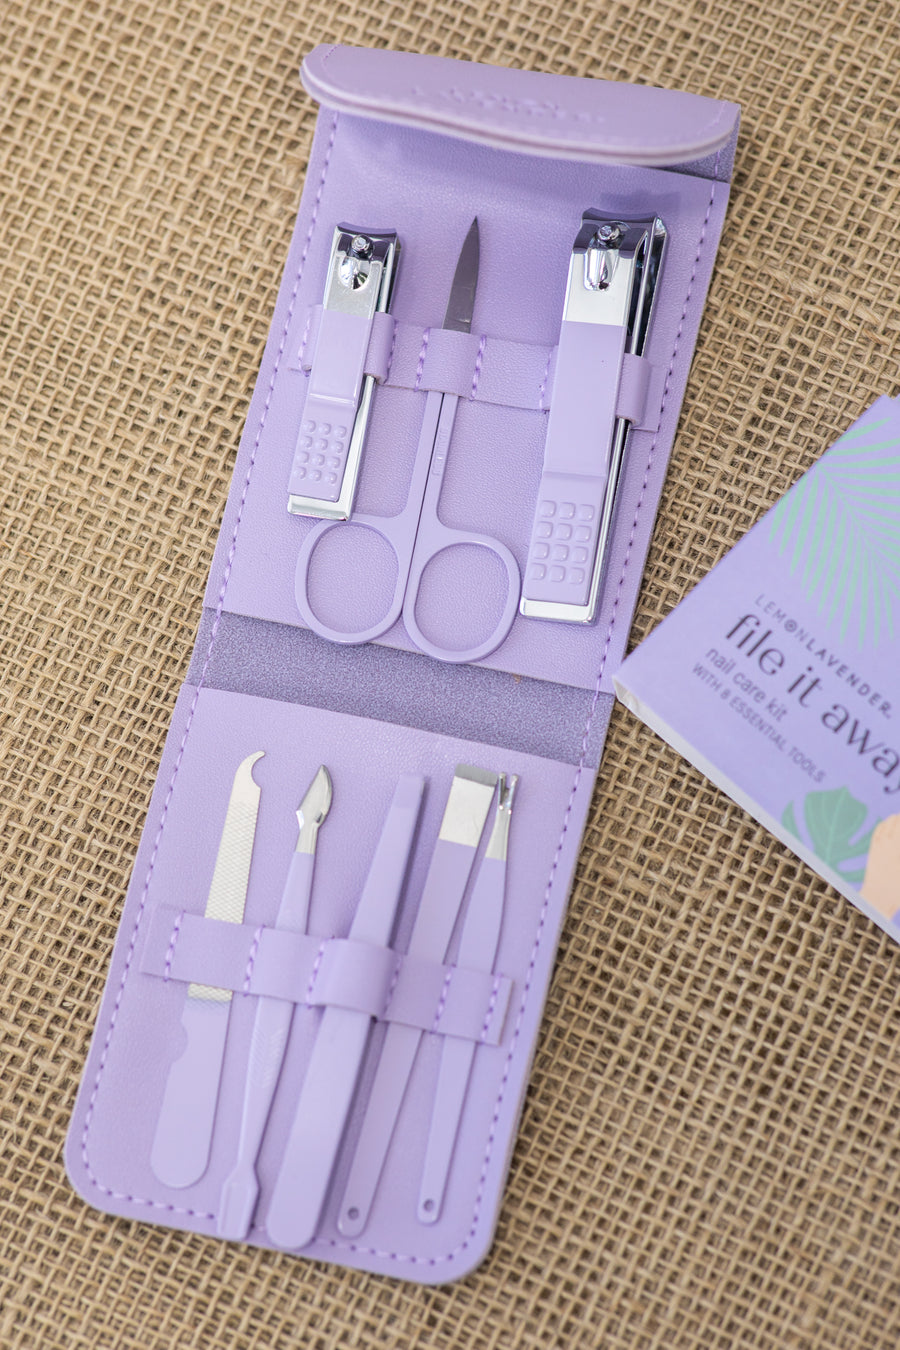 Lavender Nail Care Kit